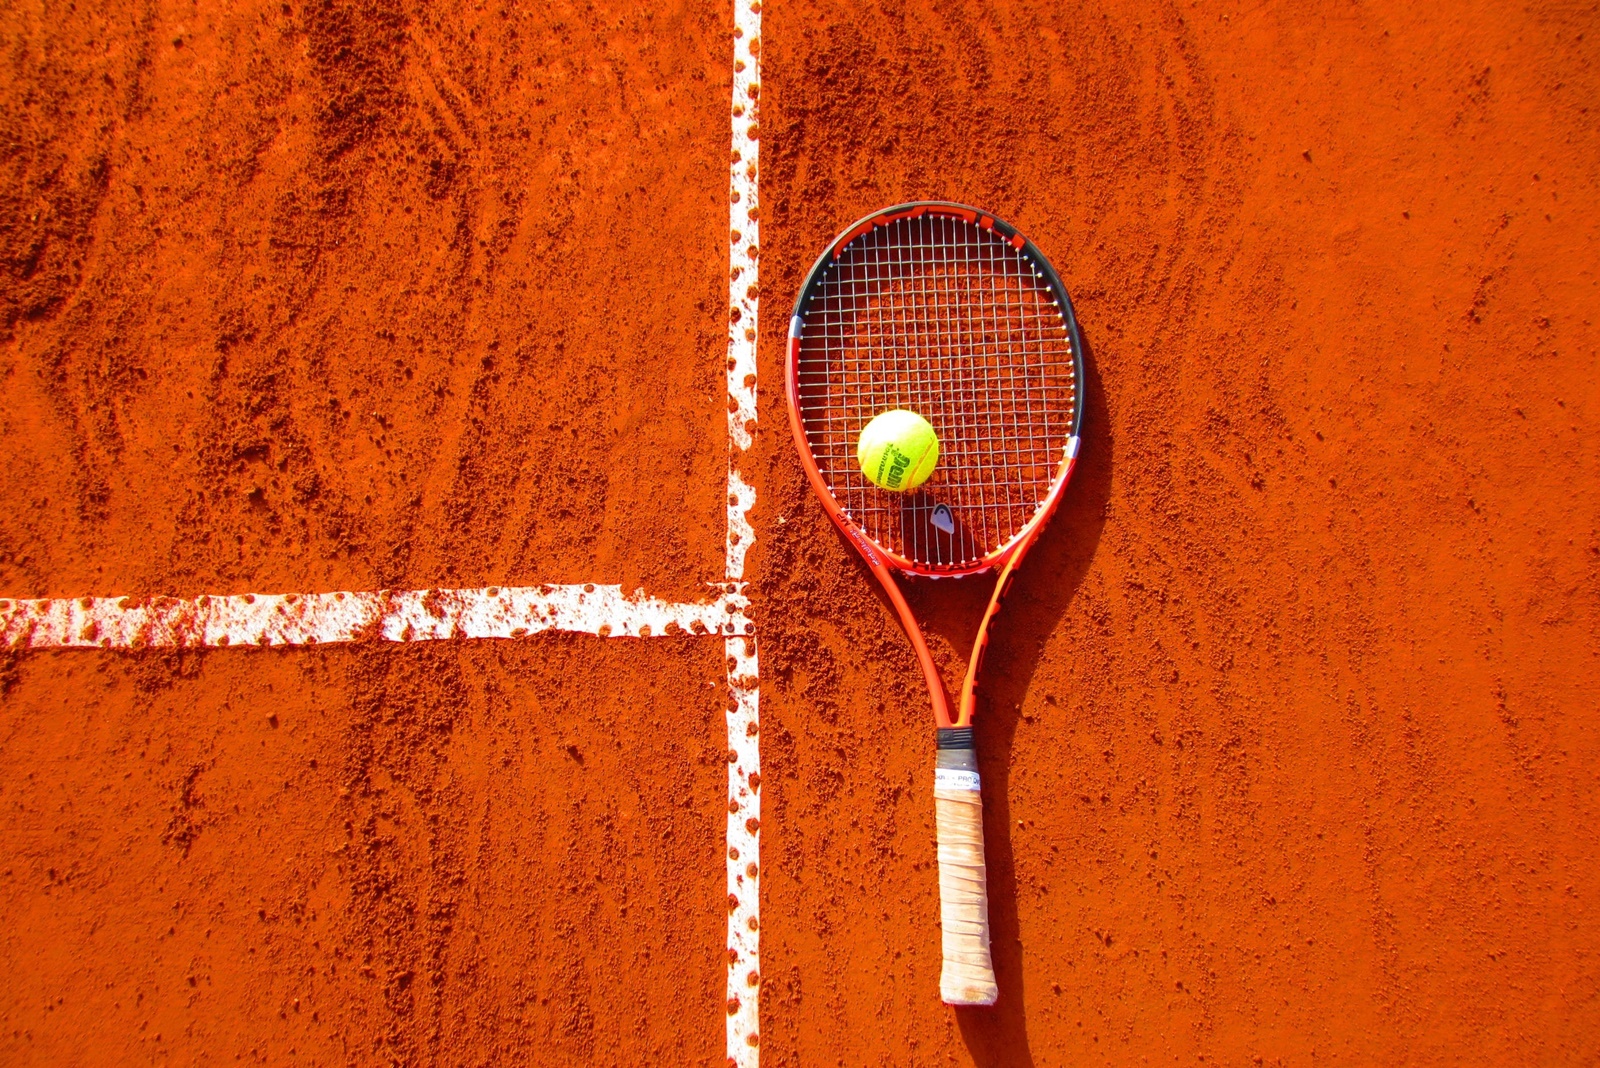 Ξύλο στο τένις: Πιάστηκαν στα χέρια οι Μουτέ – Αντρέεφ